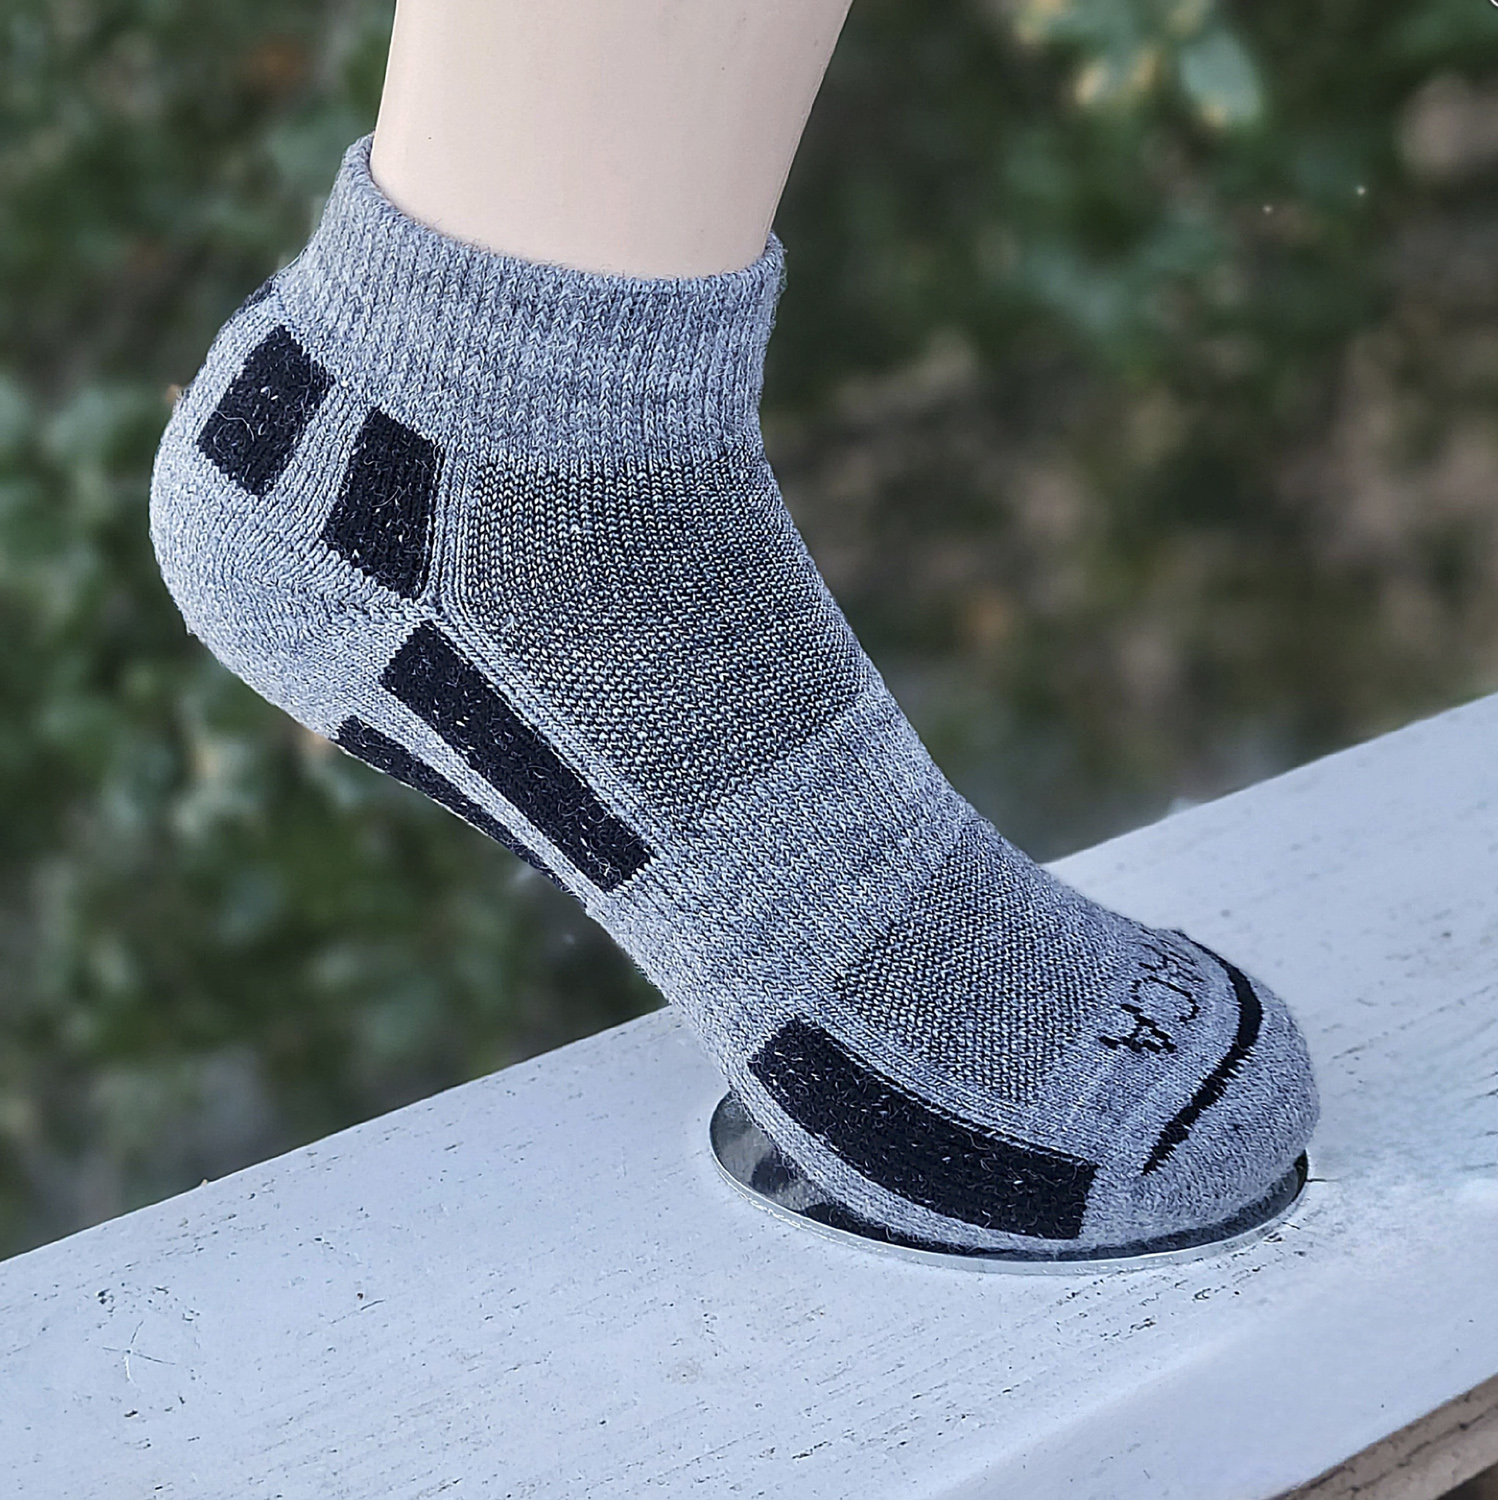 Premium Alpaca Unisex American Socks